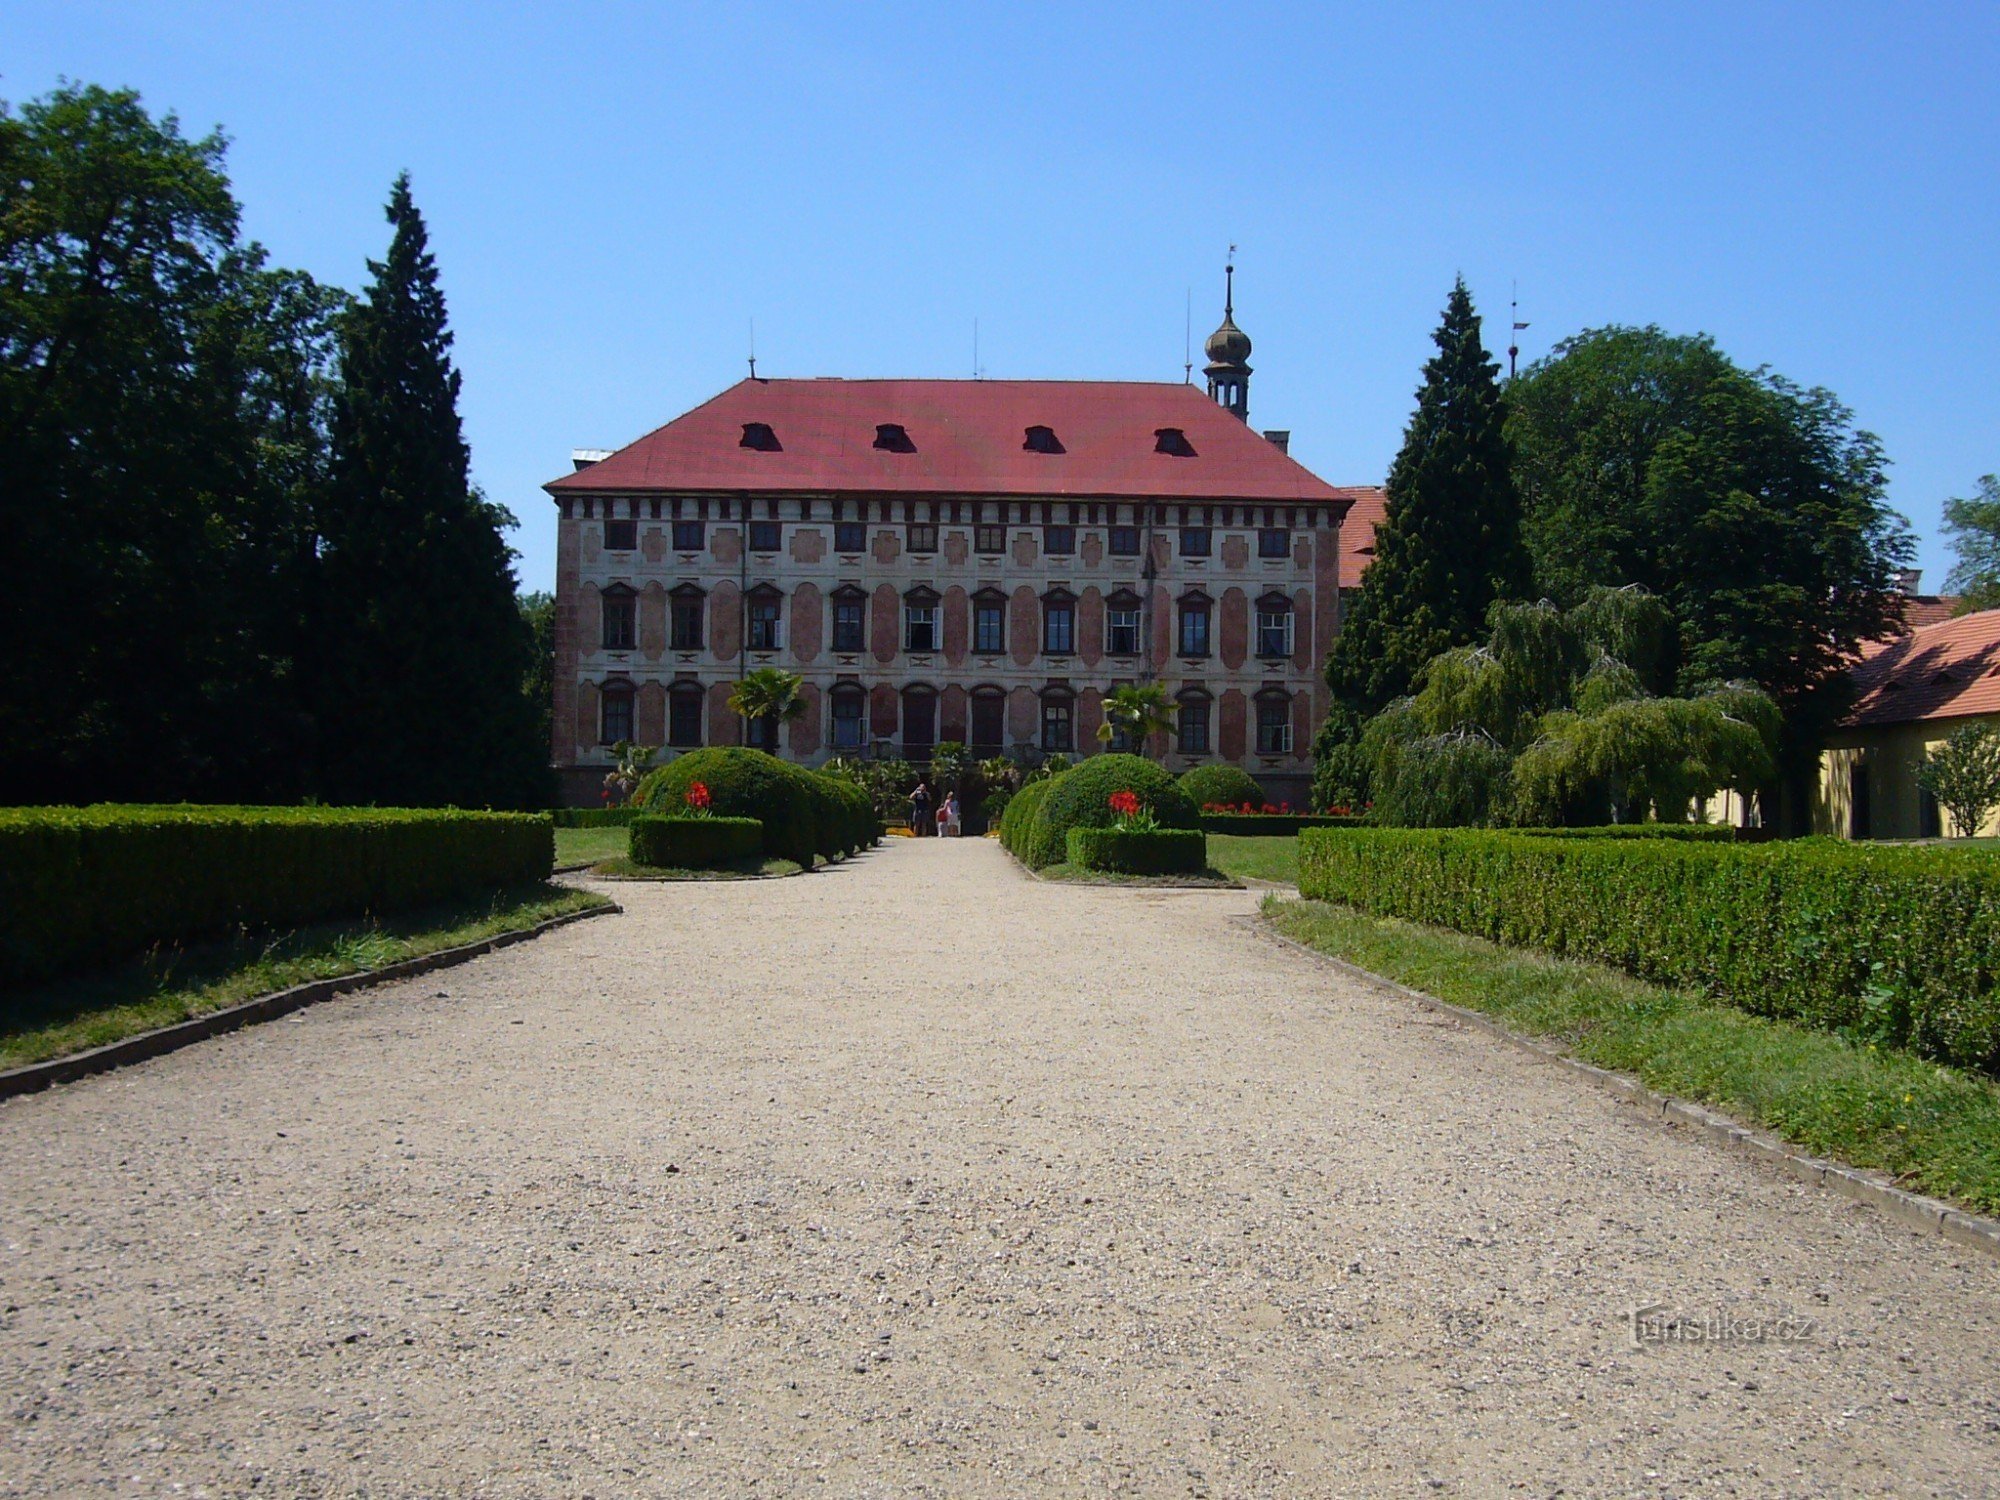 Libochovice castle